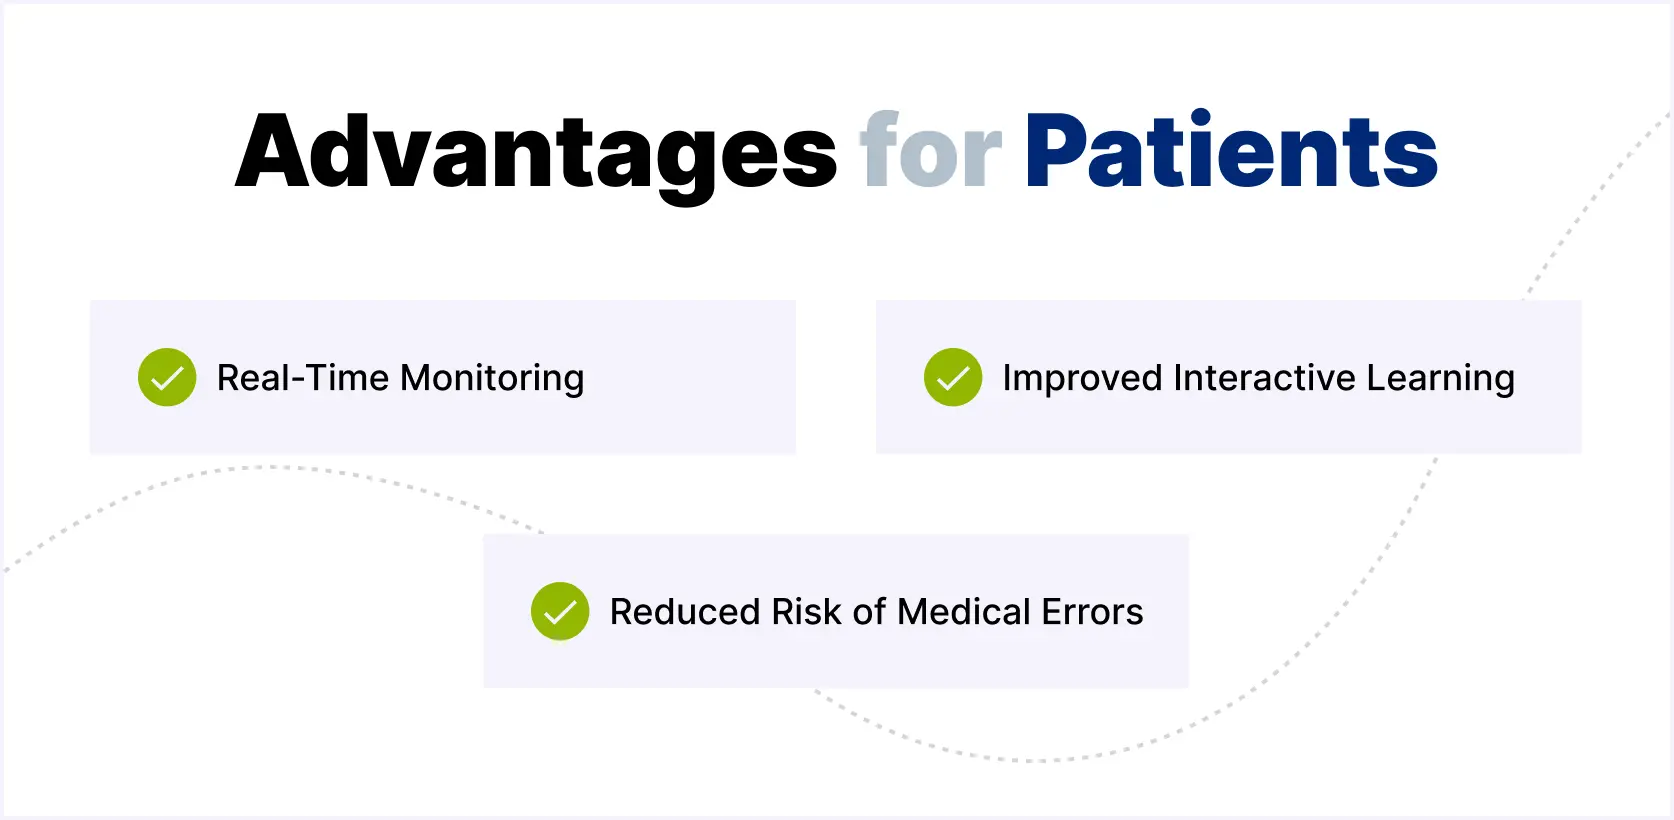 Advantages for Patients